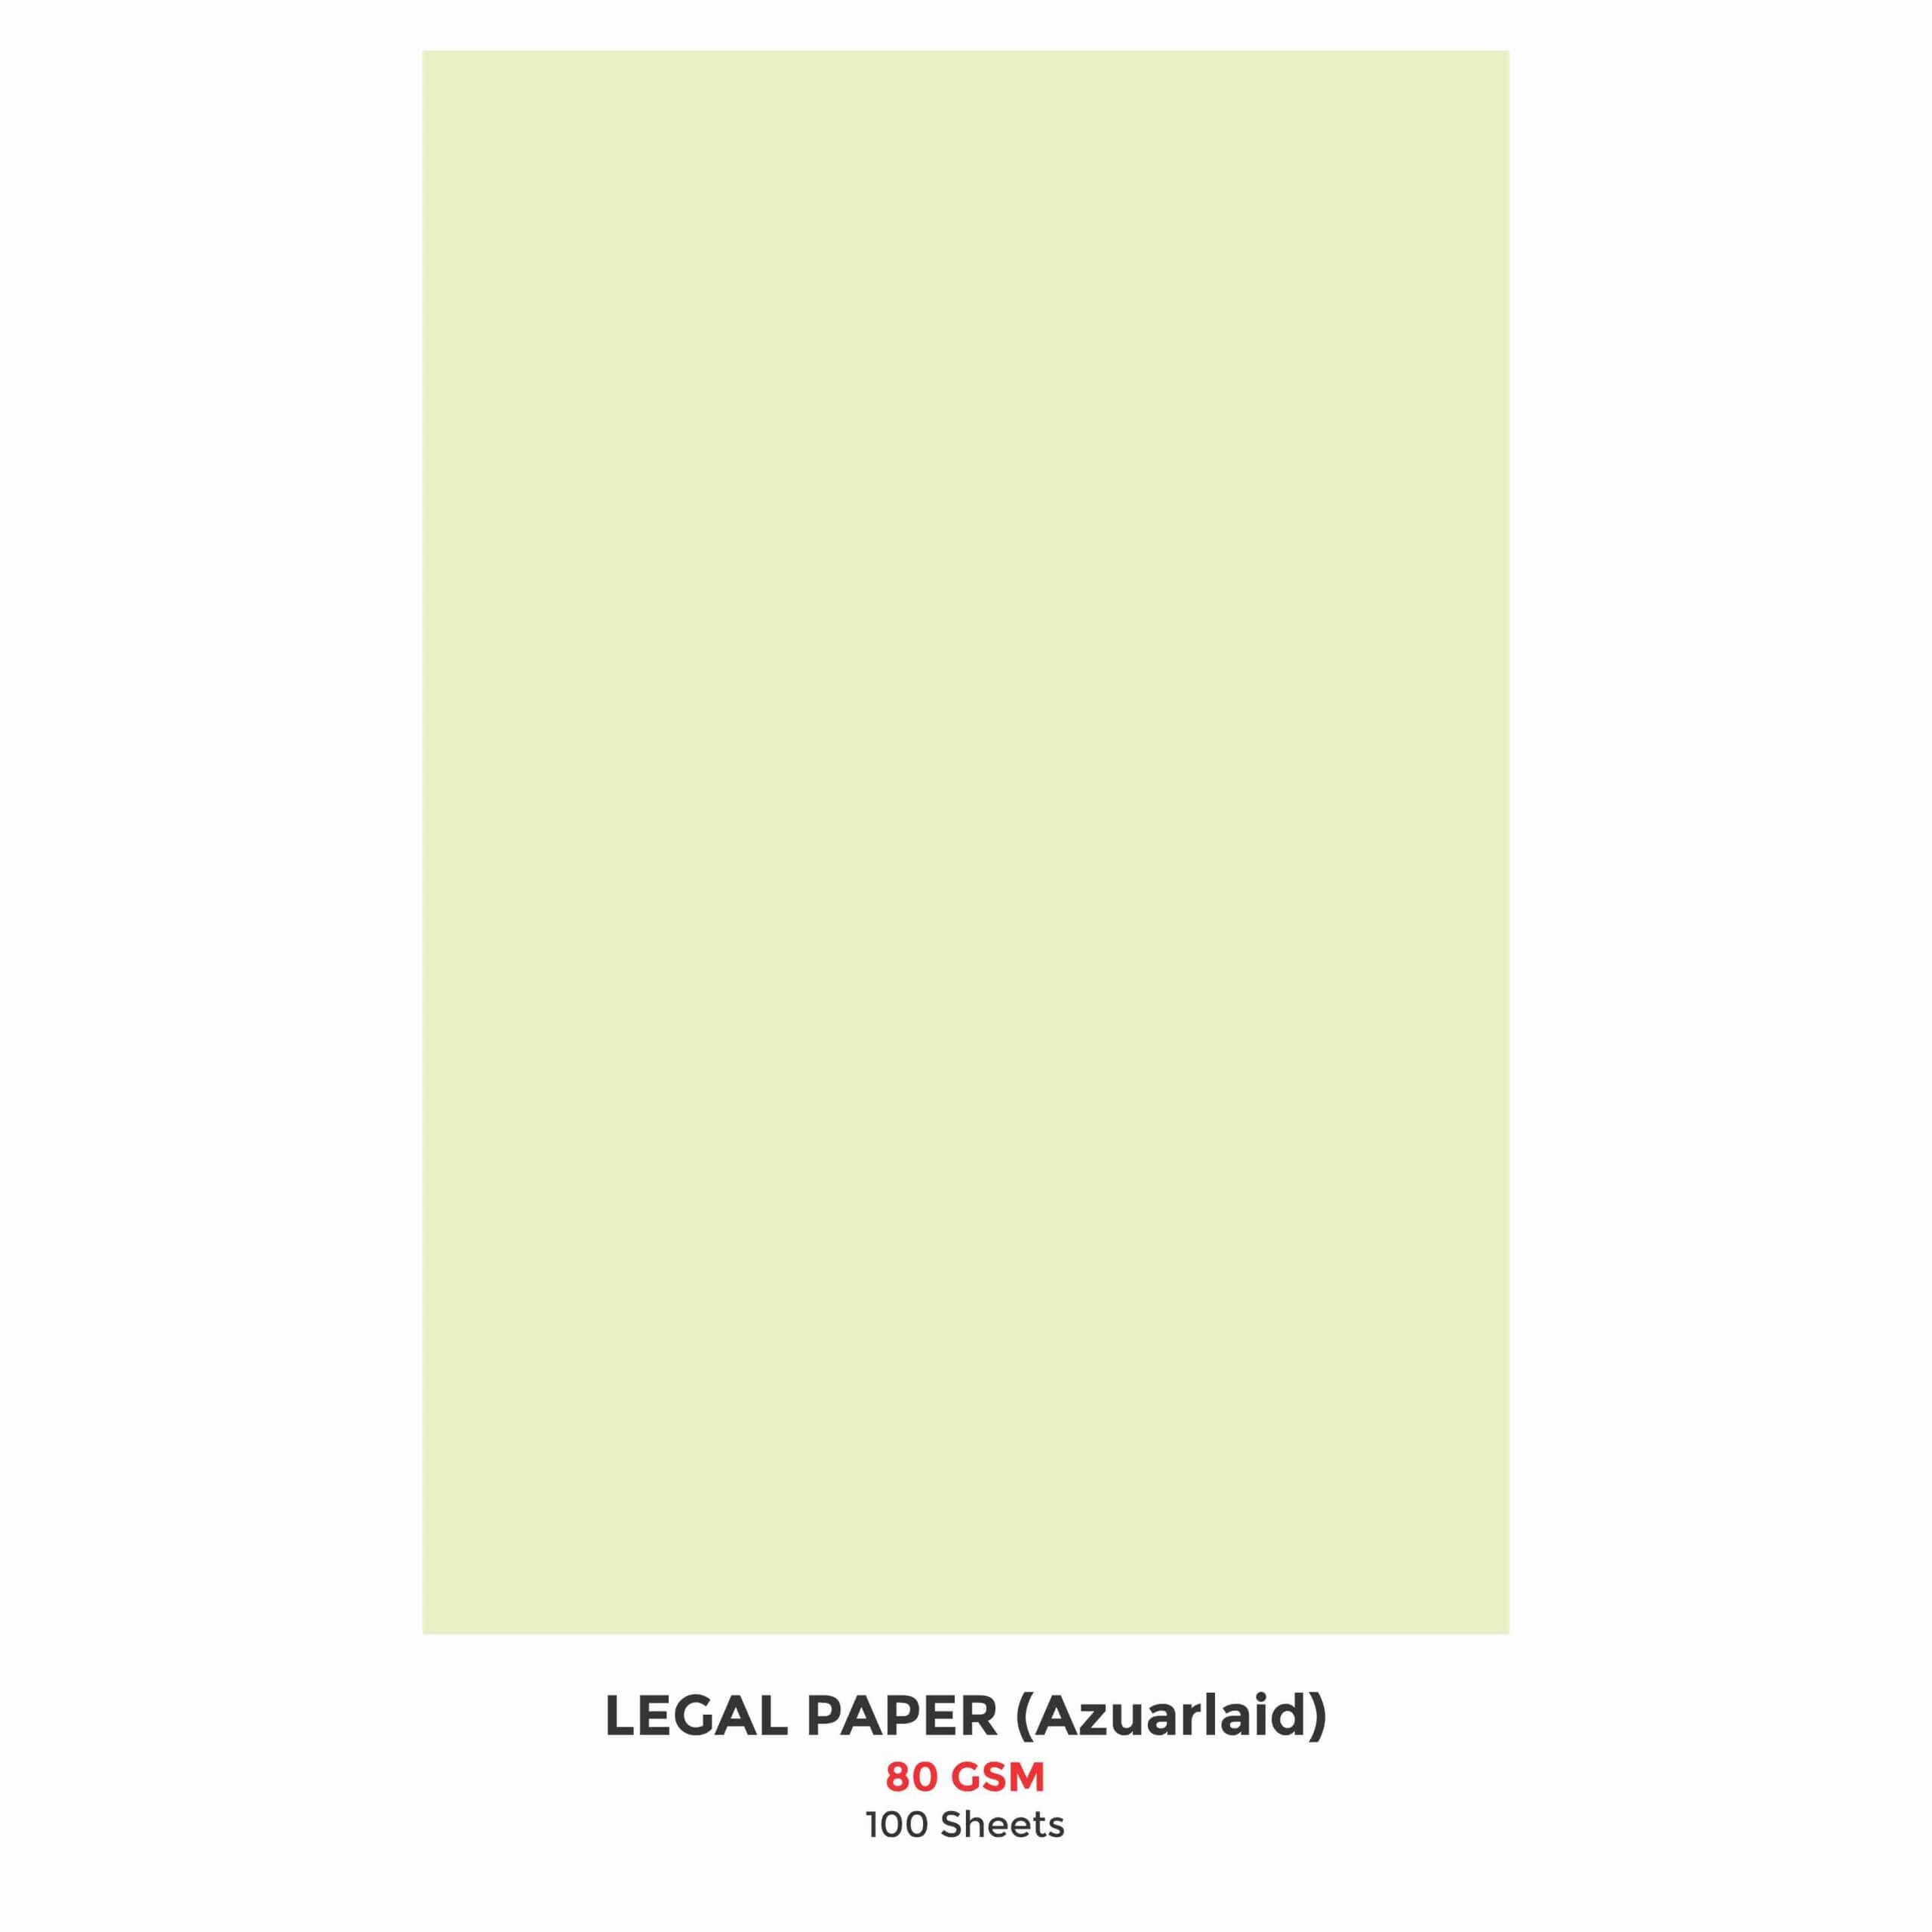 Legal Paper, 100 Sheets, 80 GSM, 22cm x 36cm  (Ledger Paper) (Azure Laid)